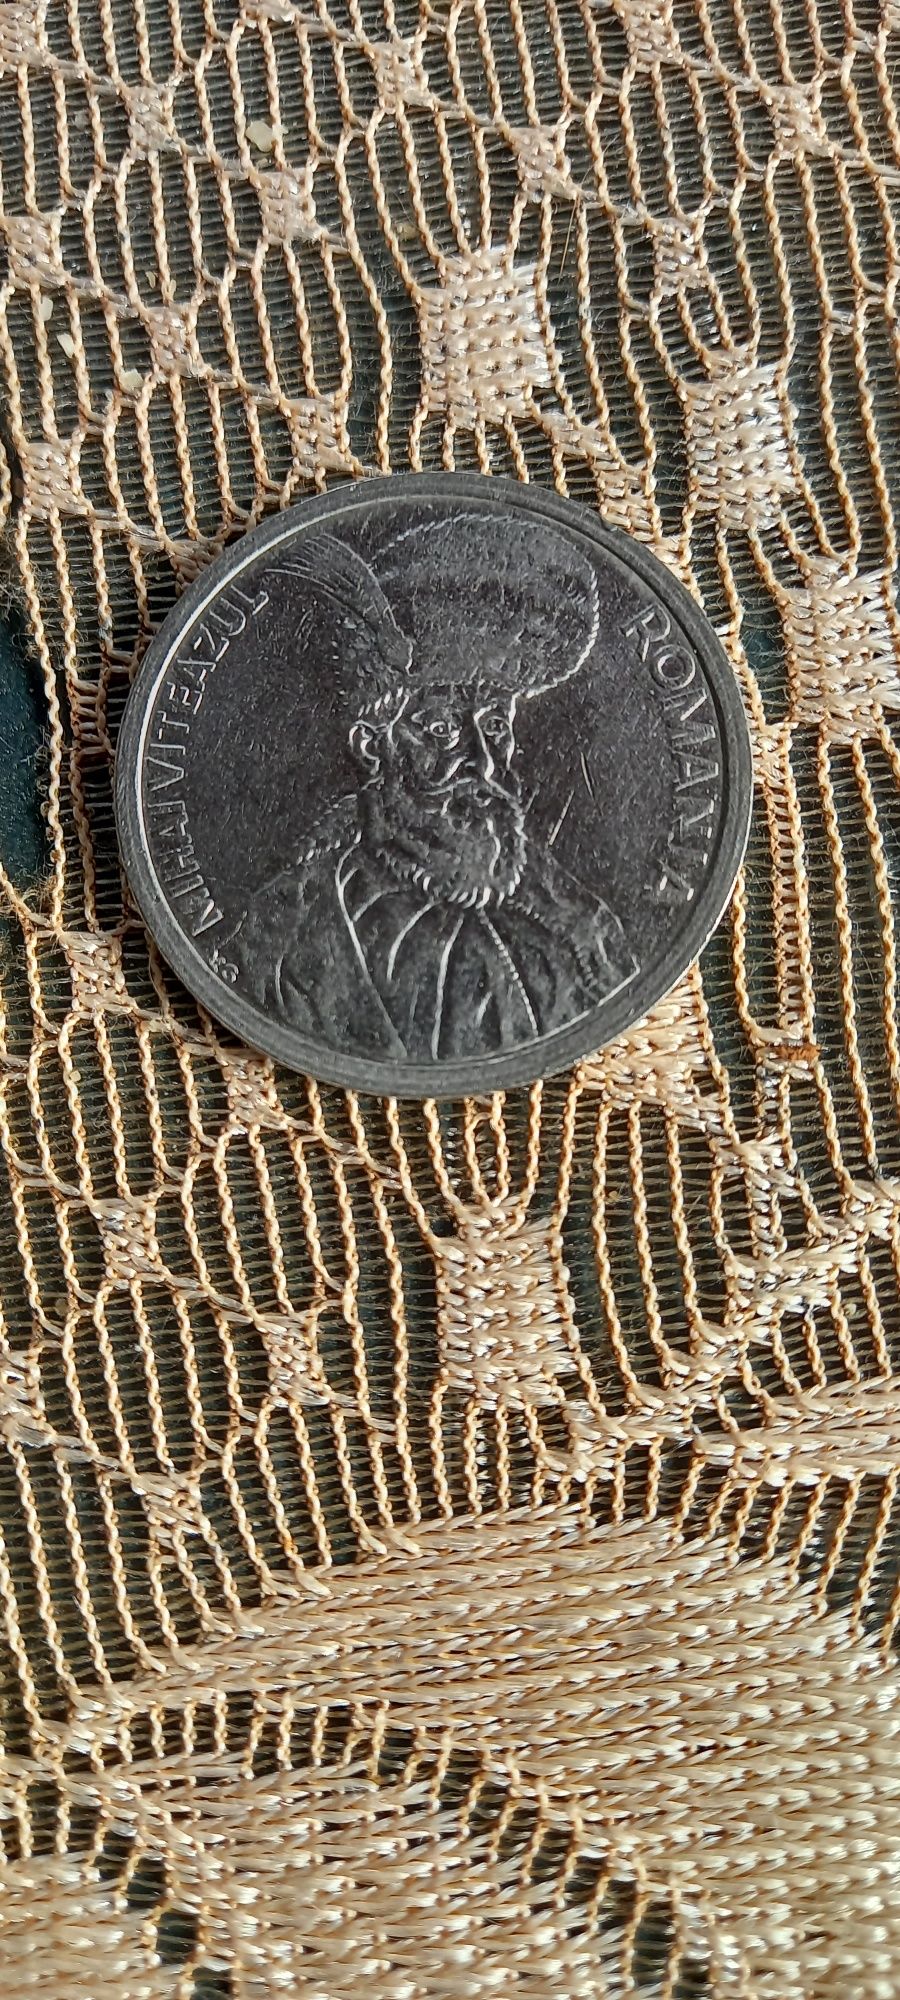 Moneda 100 lei cu Mihai Viteazul